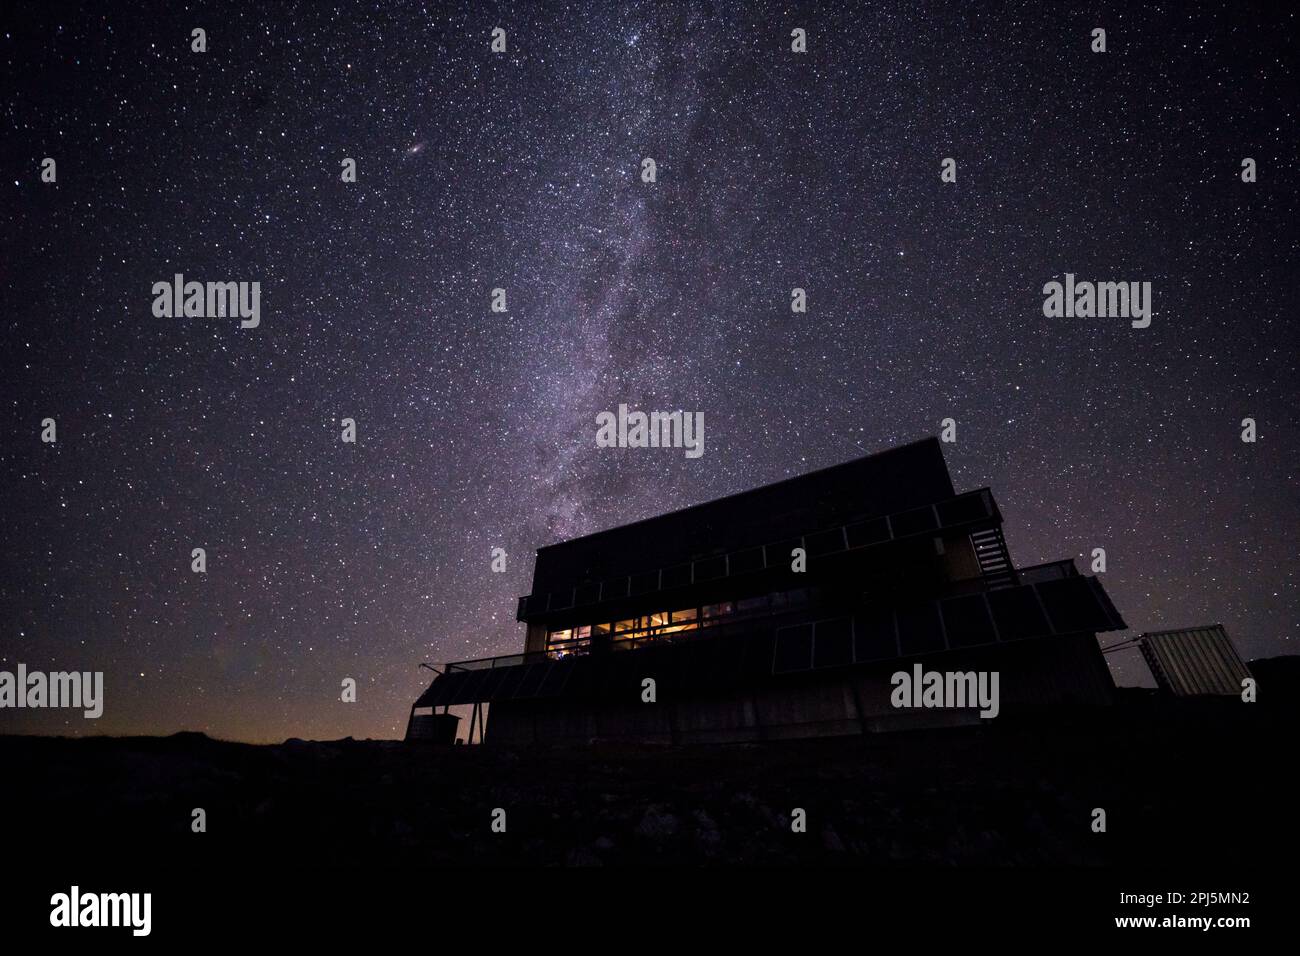 Der ruhige Nachthimmel wird von einer hellen, milchigen Kulisse beleuchtet, mit einem gemütlichen Haus im Vordergrund Stockfoto